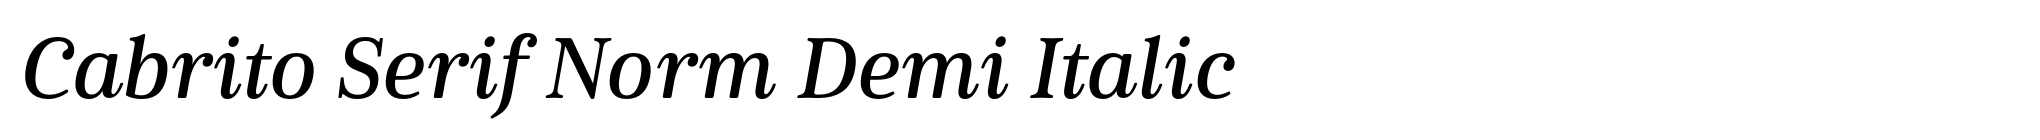 Cabrito Serif Norm Demi Italic image